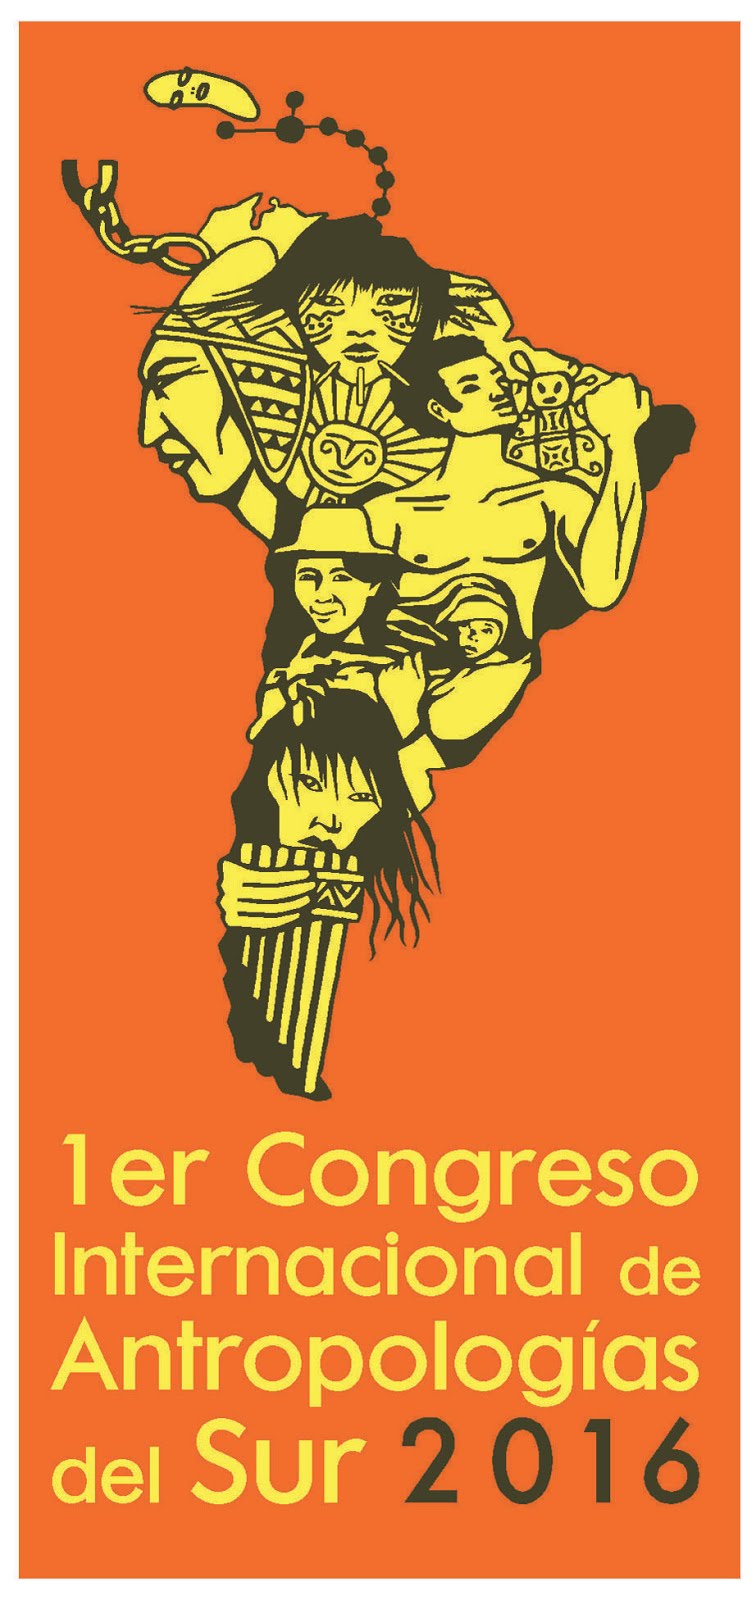 Invitación al I Congreso de Antropologías del Sur